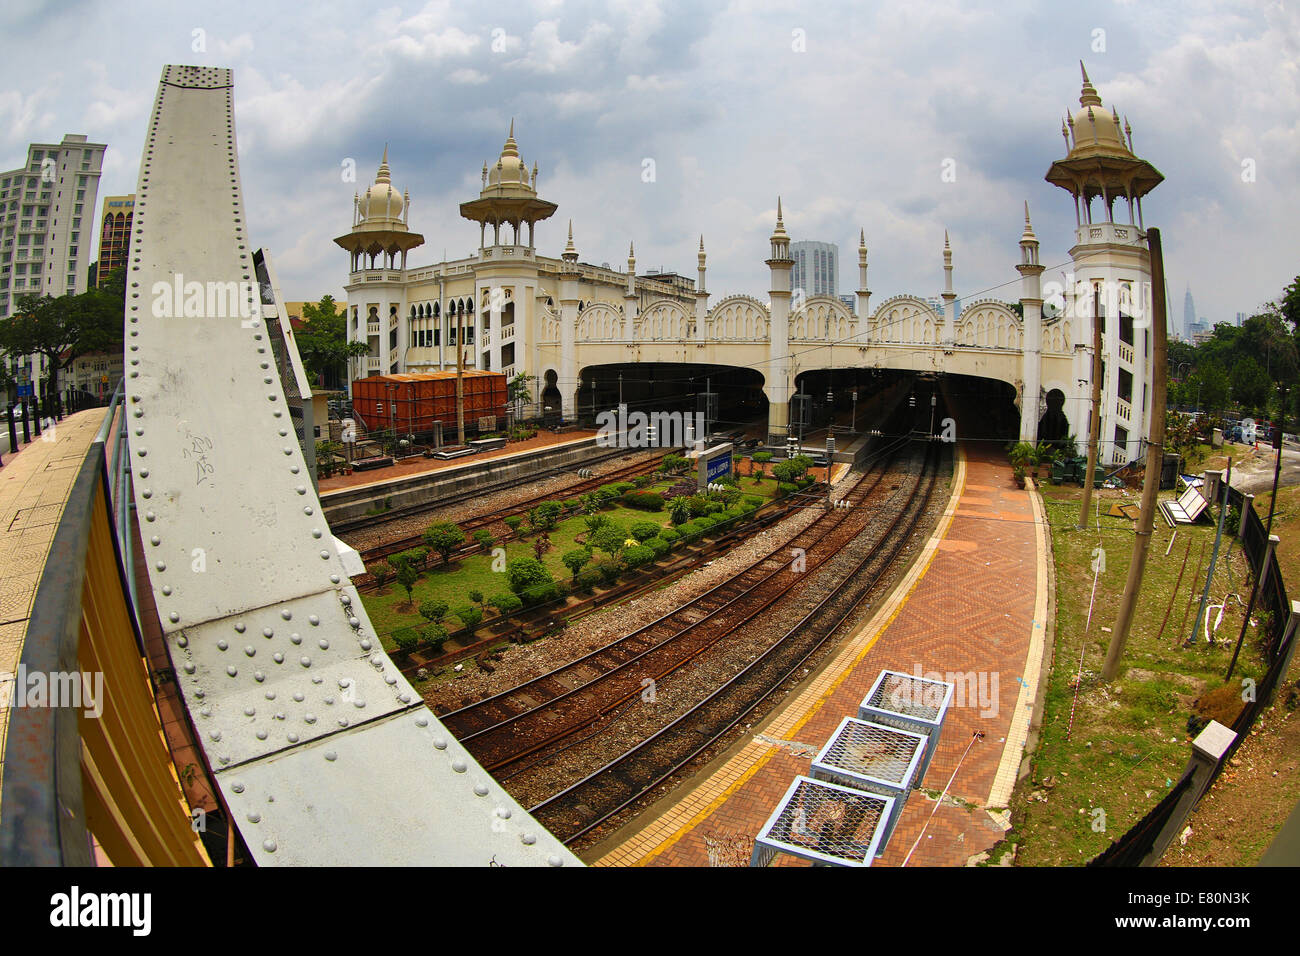 Kuala Lumpur Railway Station in Kuala Lumpur, Malaysia Stock Photo